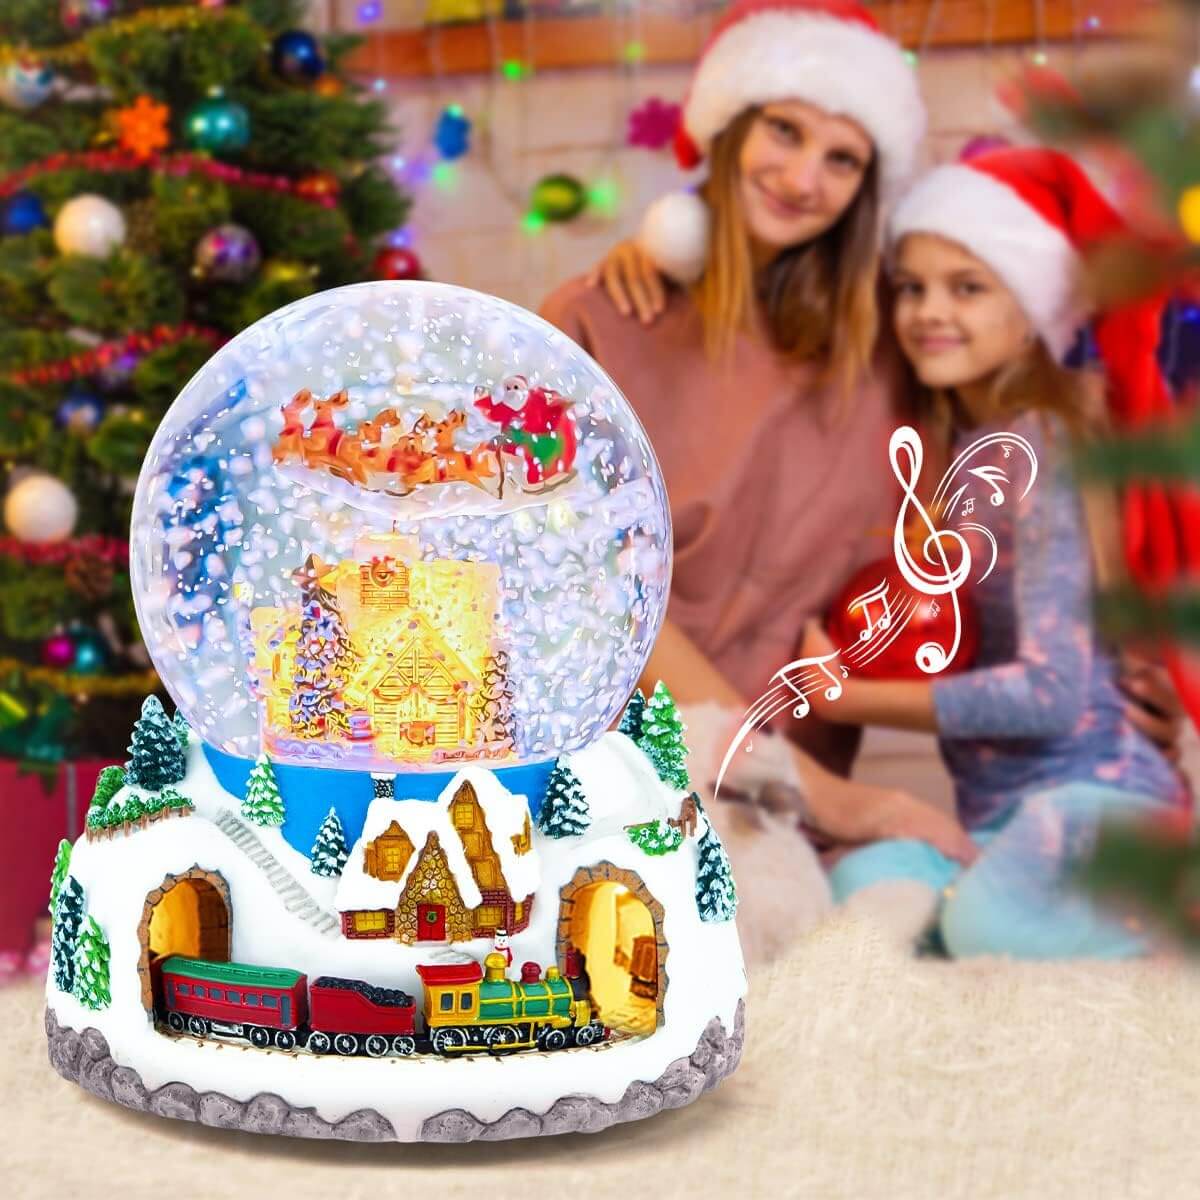 Ho Ho Ho! Get Fun and Festive with a Christmas Music Box!